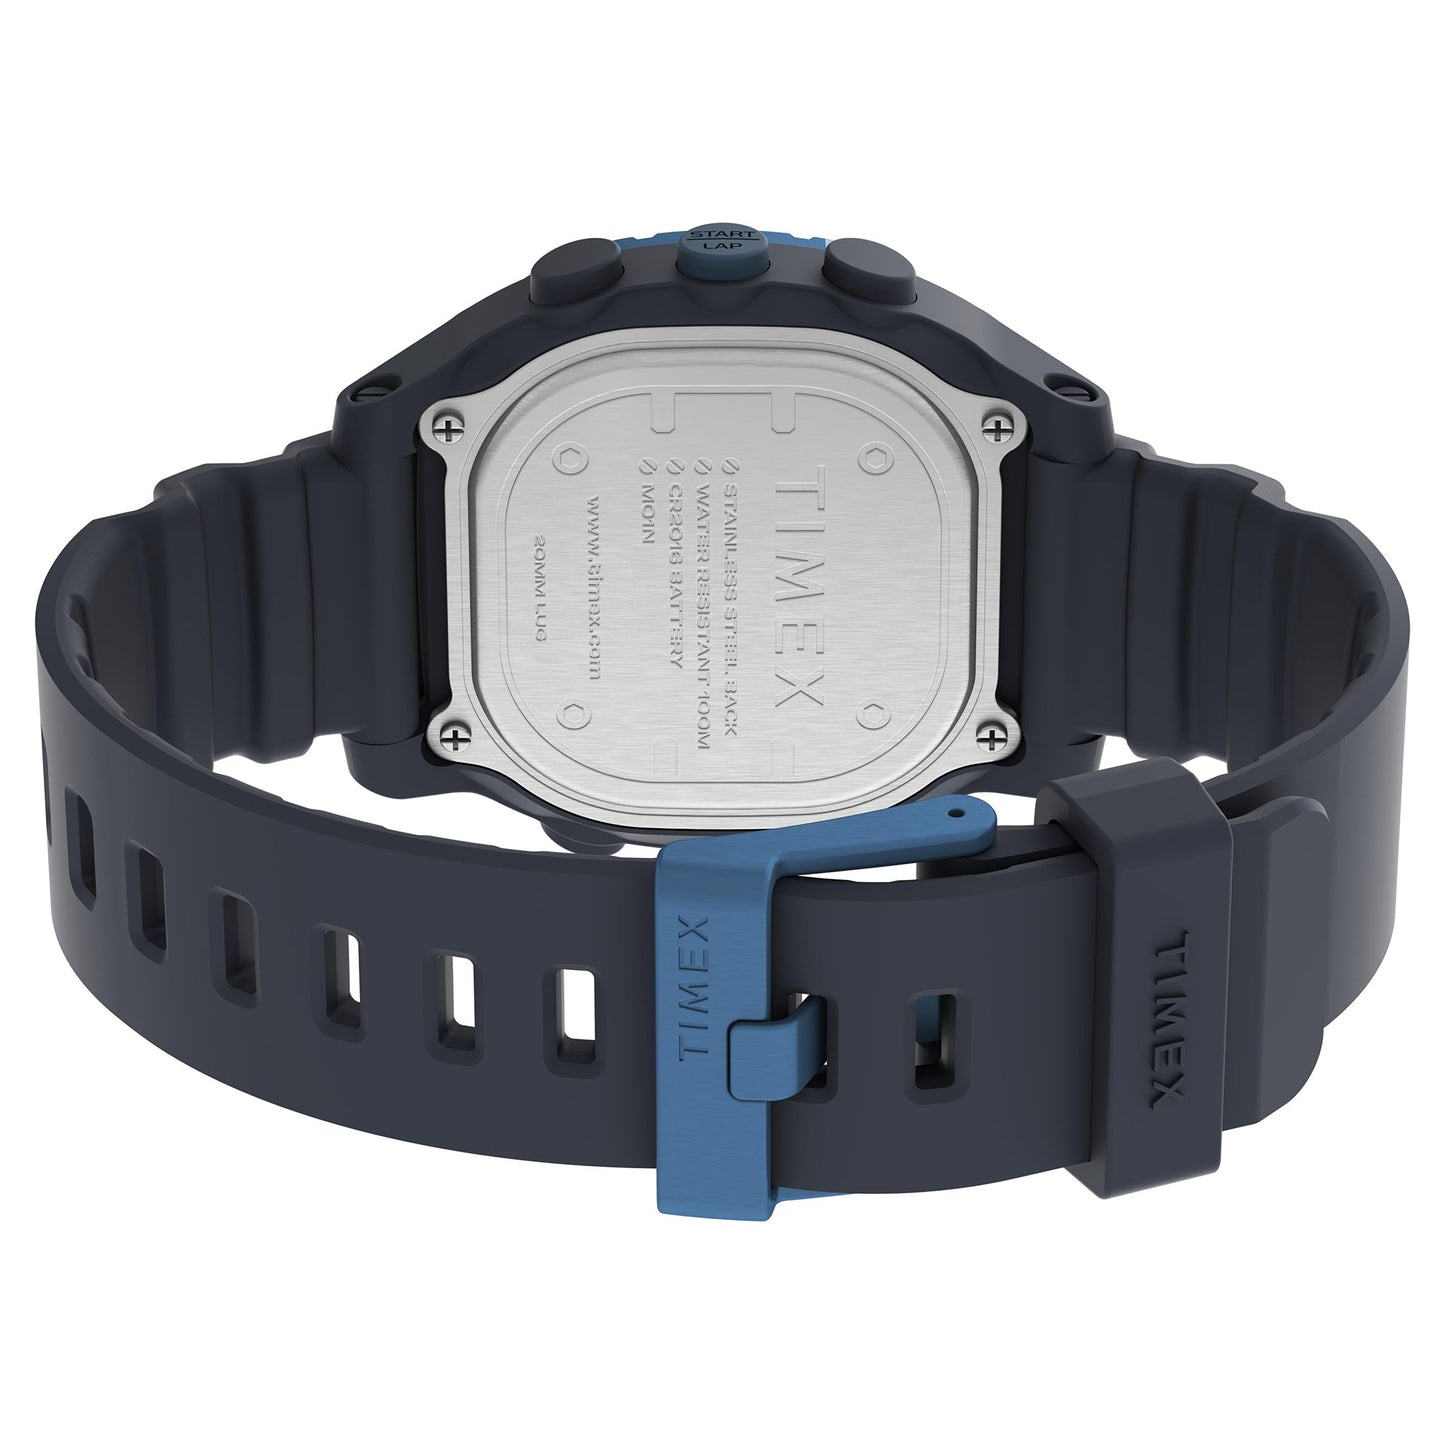 TW5M35500 TIMEX Unisex's Watch